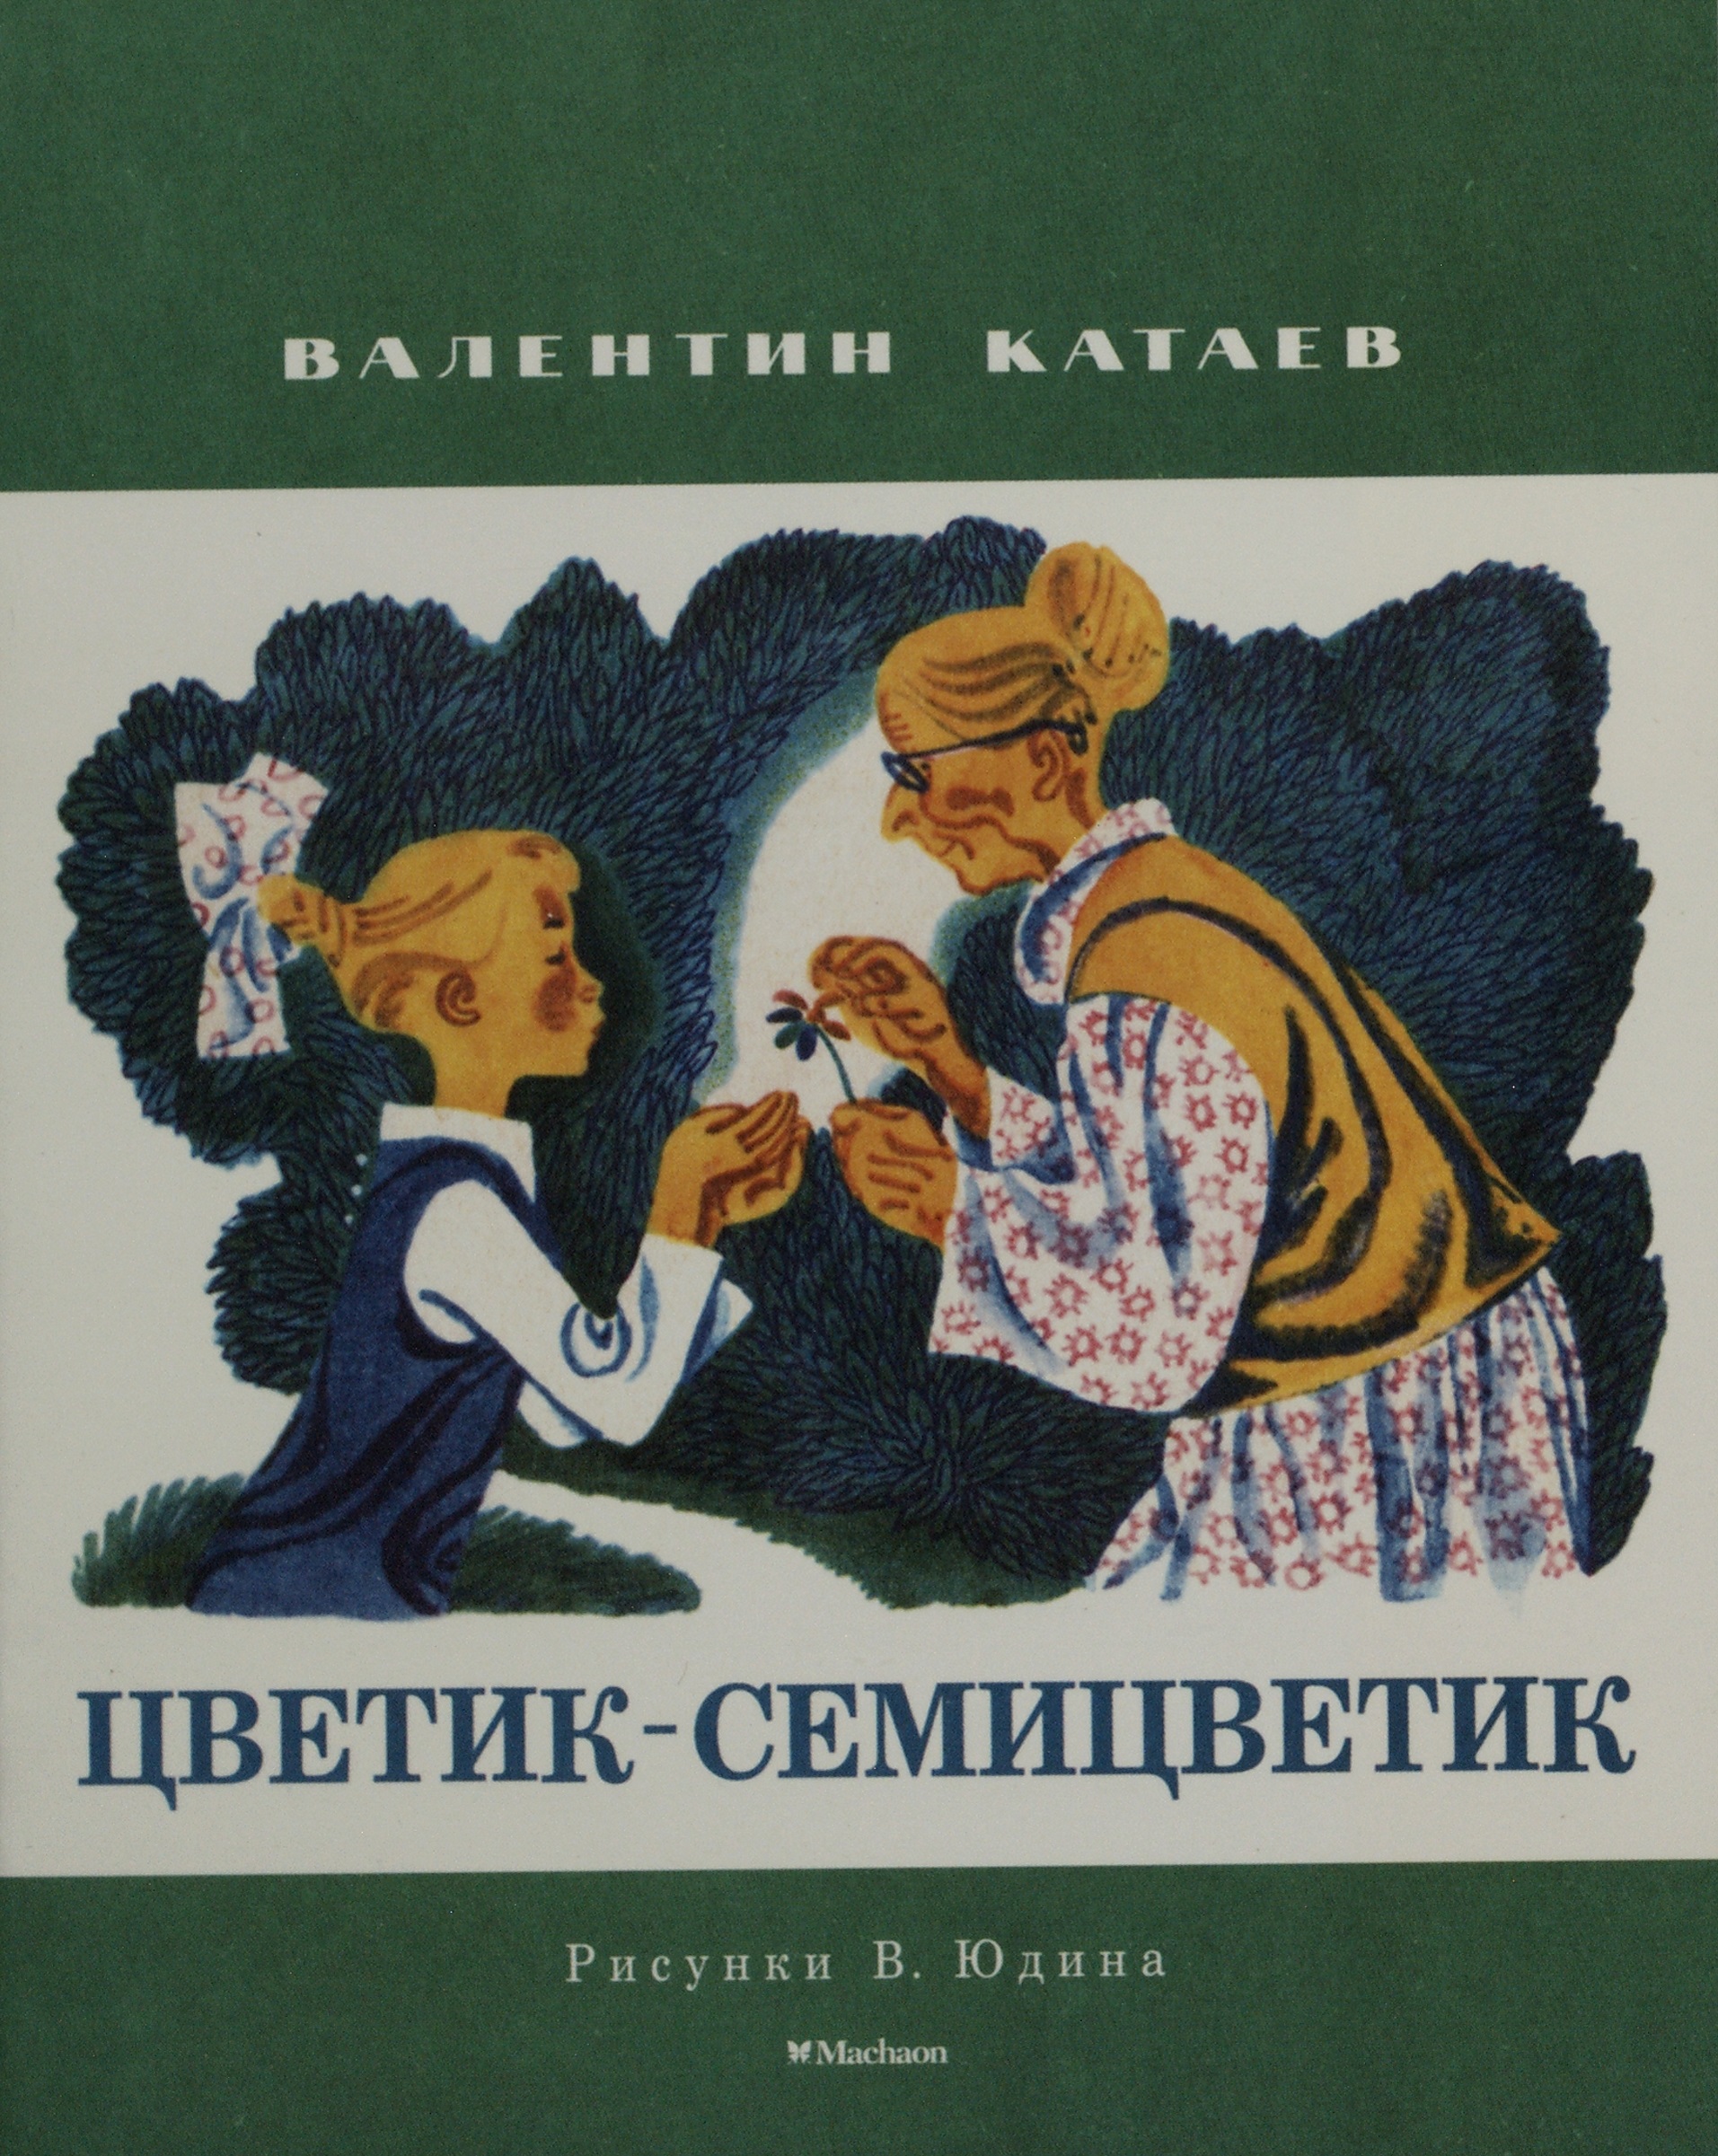 Кнмга Катаев в. п. «Цветик-семицветик